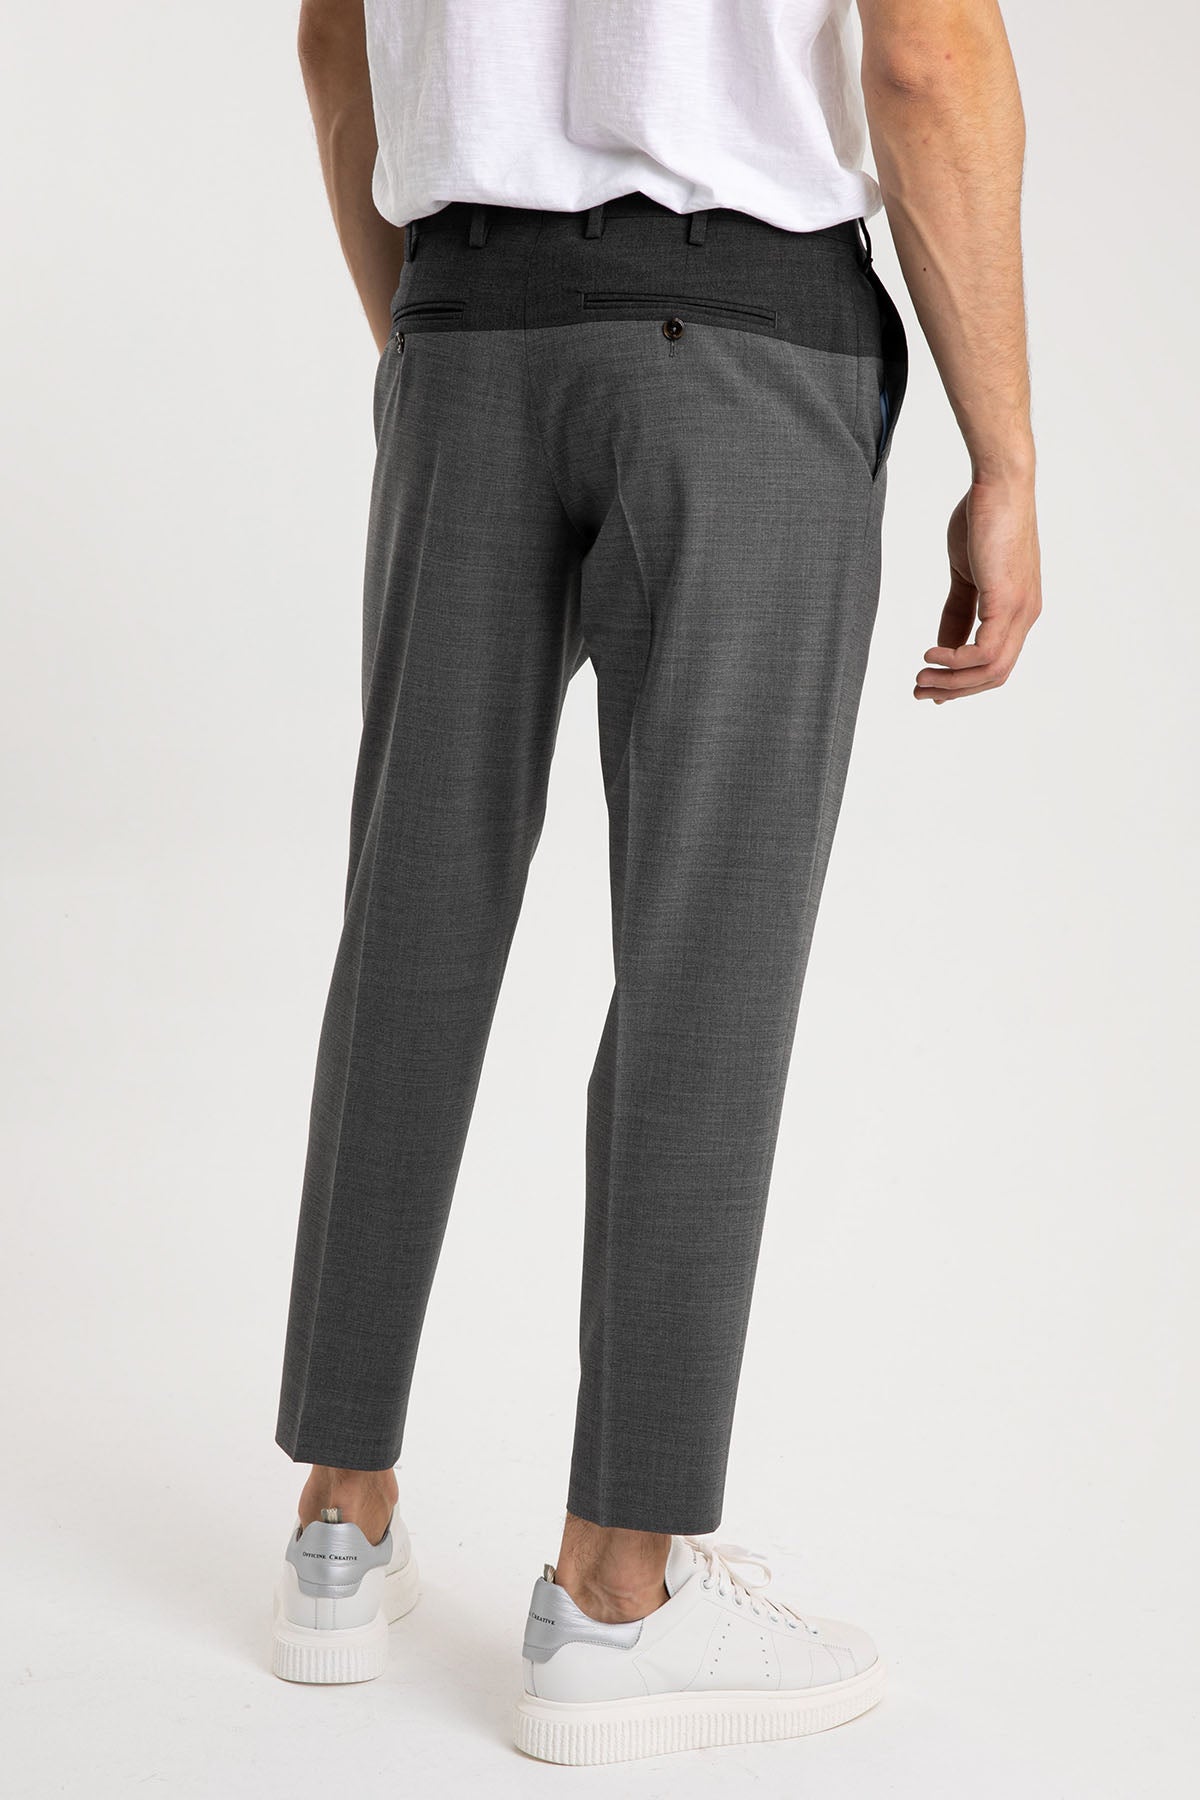 Pantaloni Torino Rebel Fit Yandan Cepli Pantolon-Libas Trendy Fashion Store